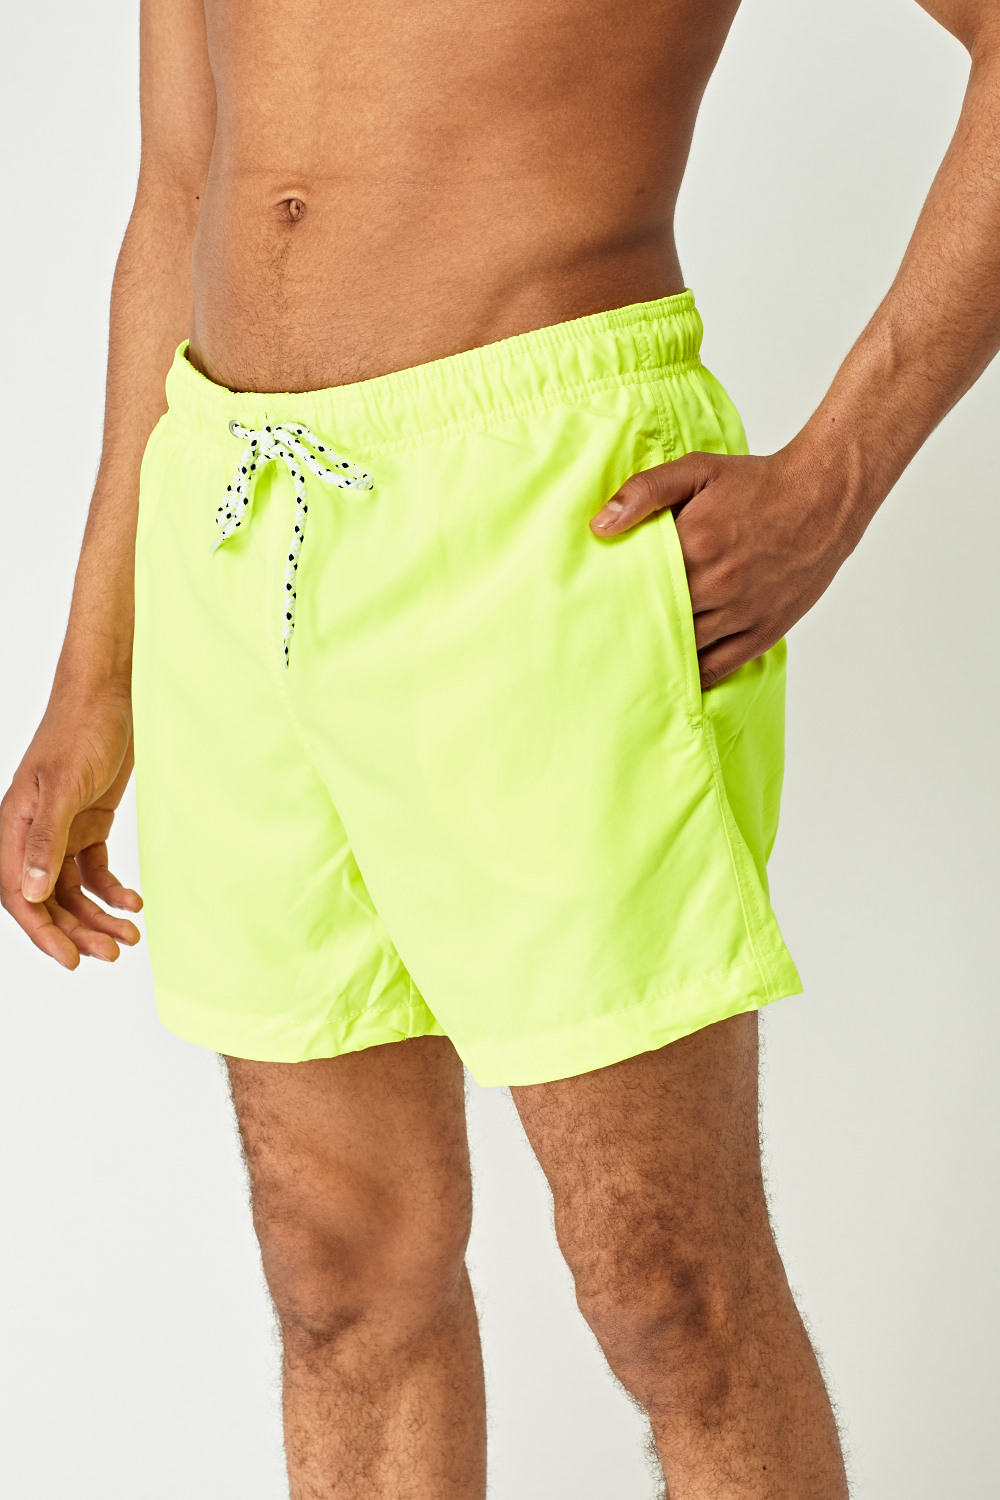 Neon Yellow Mens Swim Shorts - Just $7